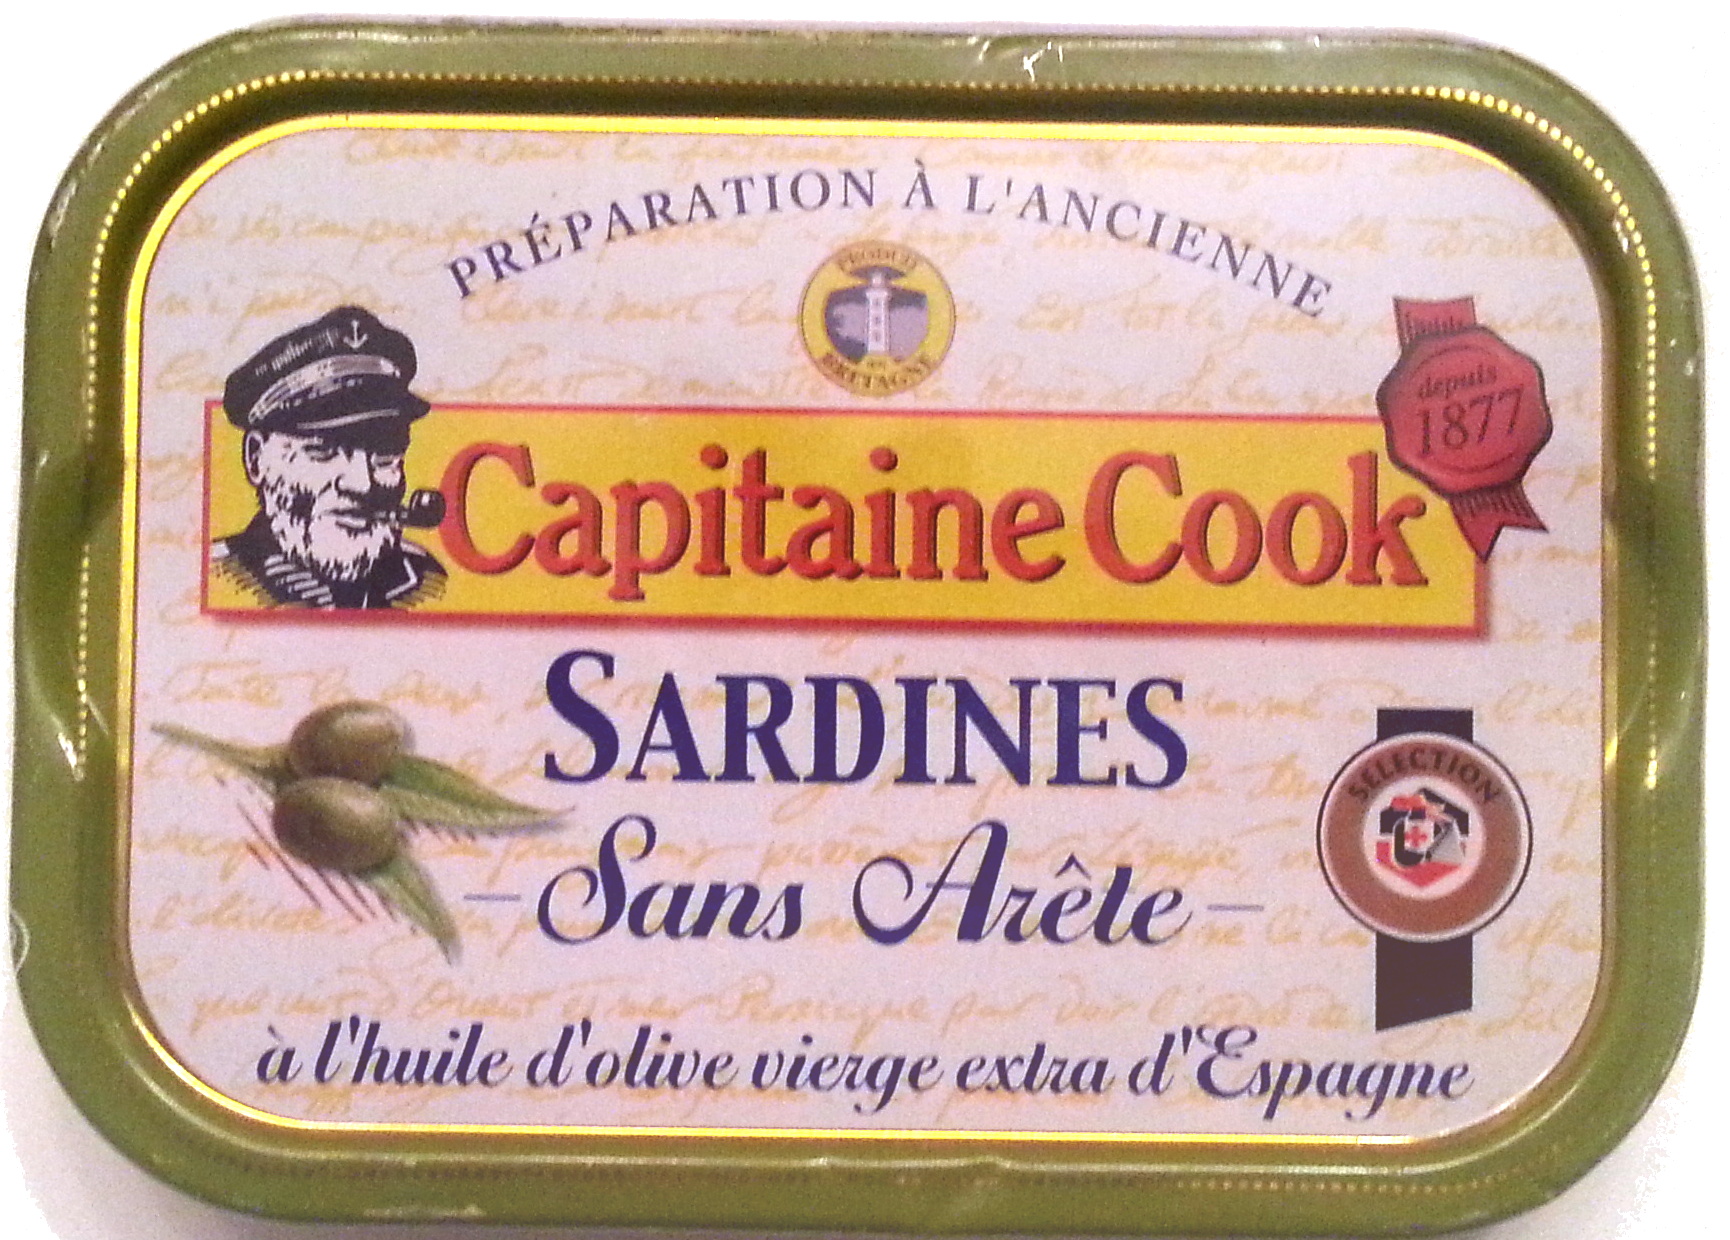 Sardines sans arête à l'huile d'olive vierge extra - Produit - fr